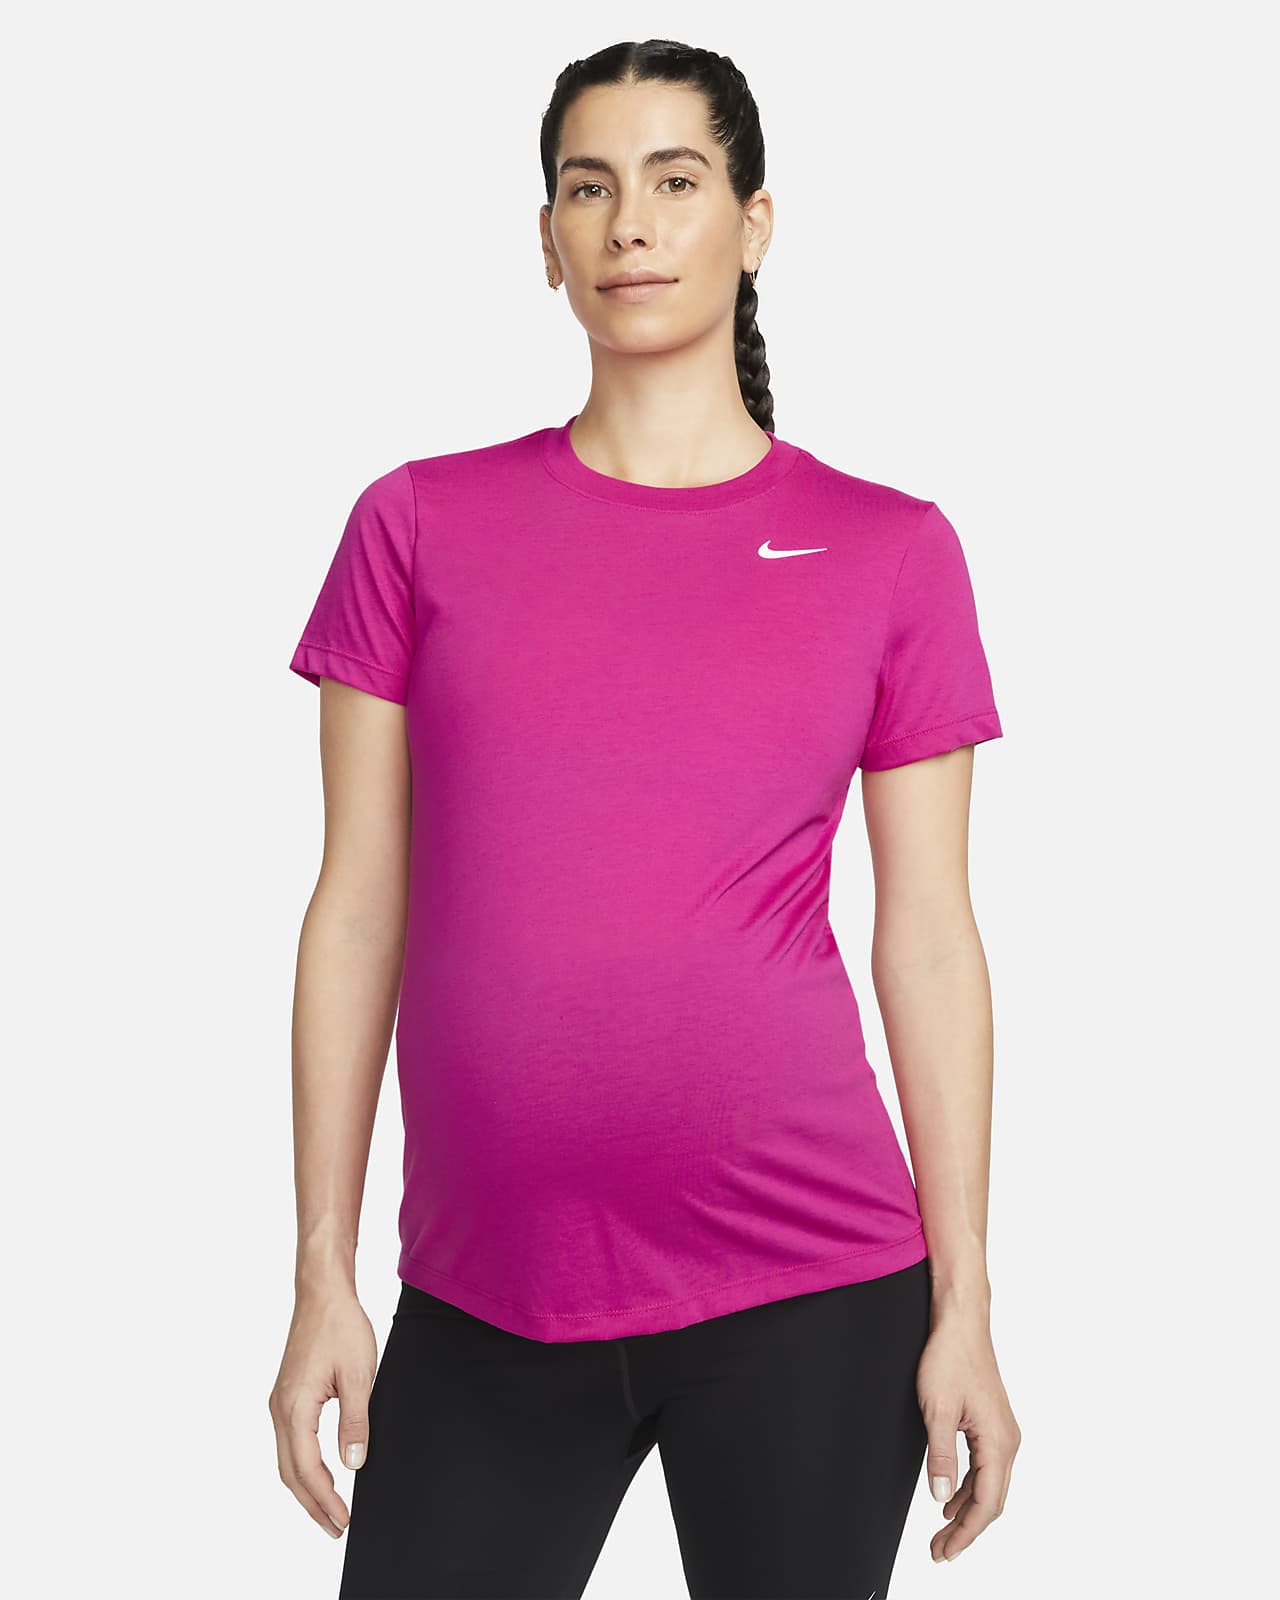 Tee-shirt Nike Dri-FIT (M) pour Femme (maternité)